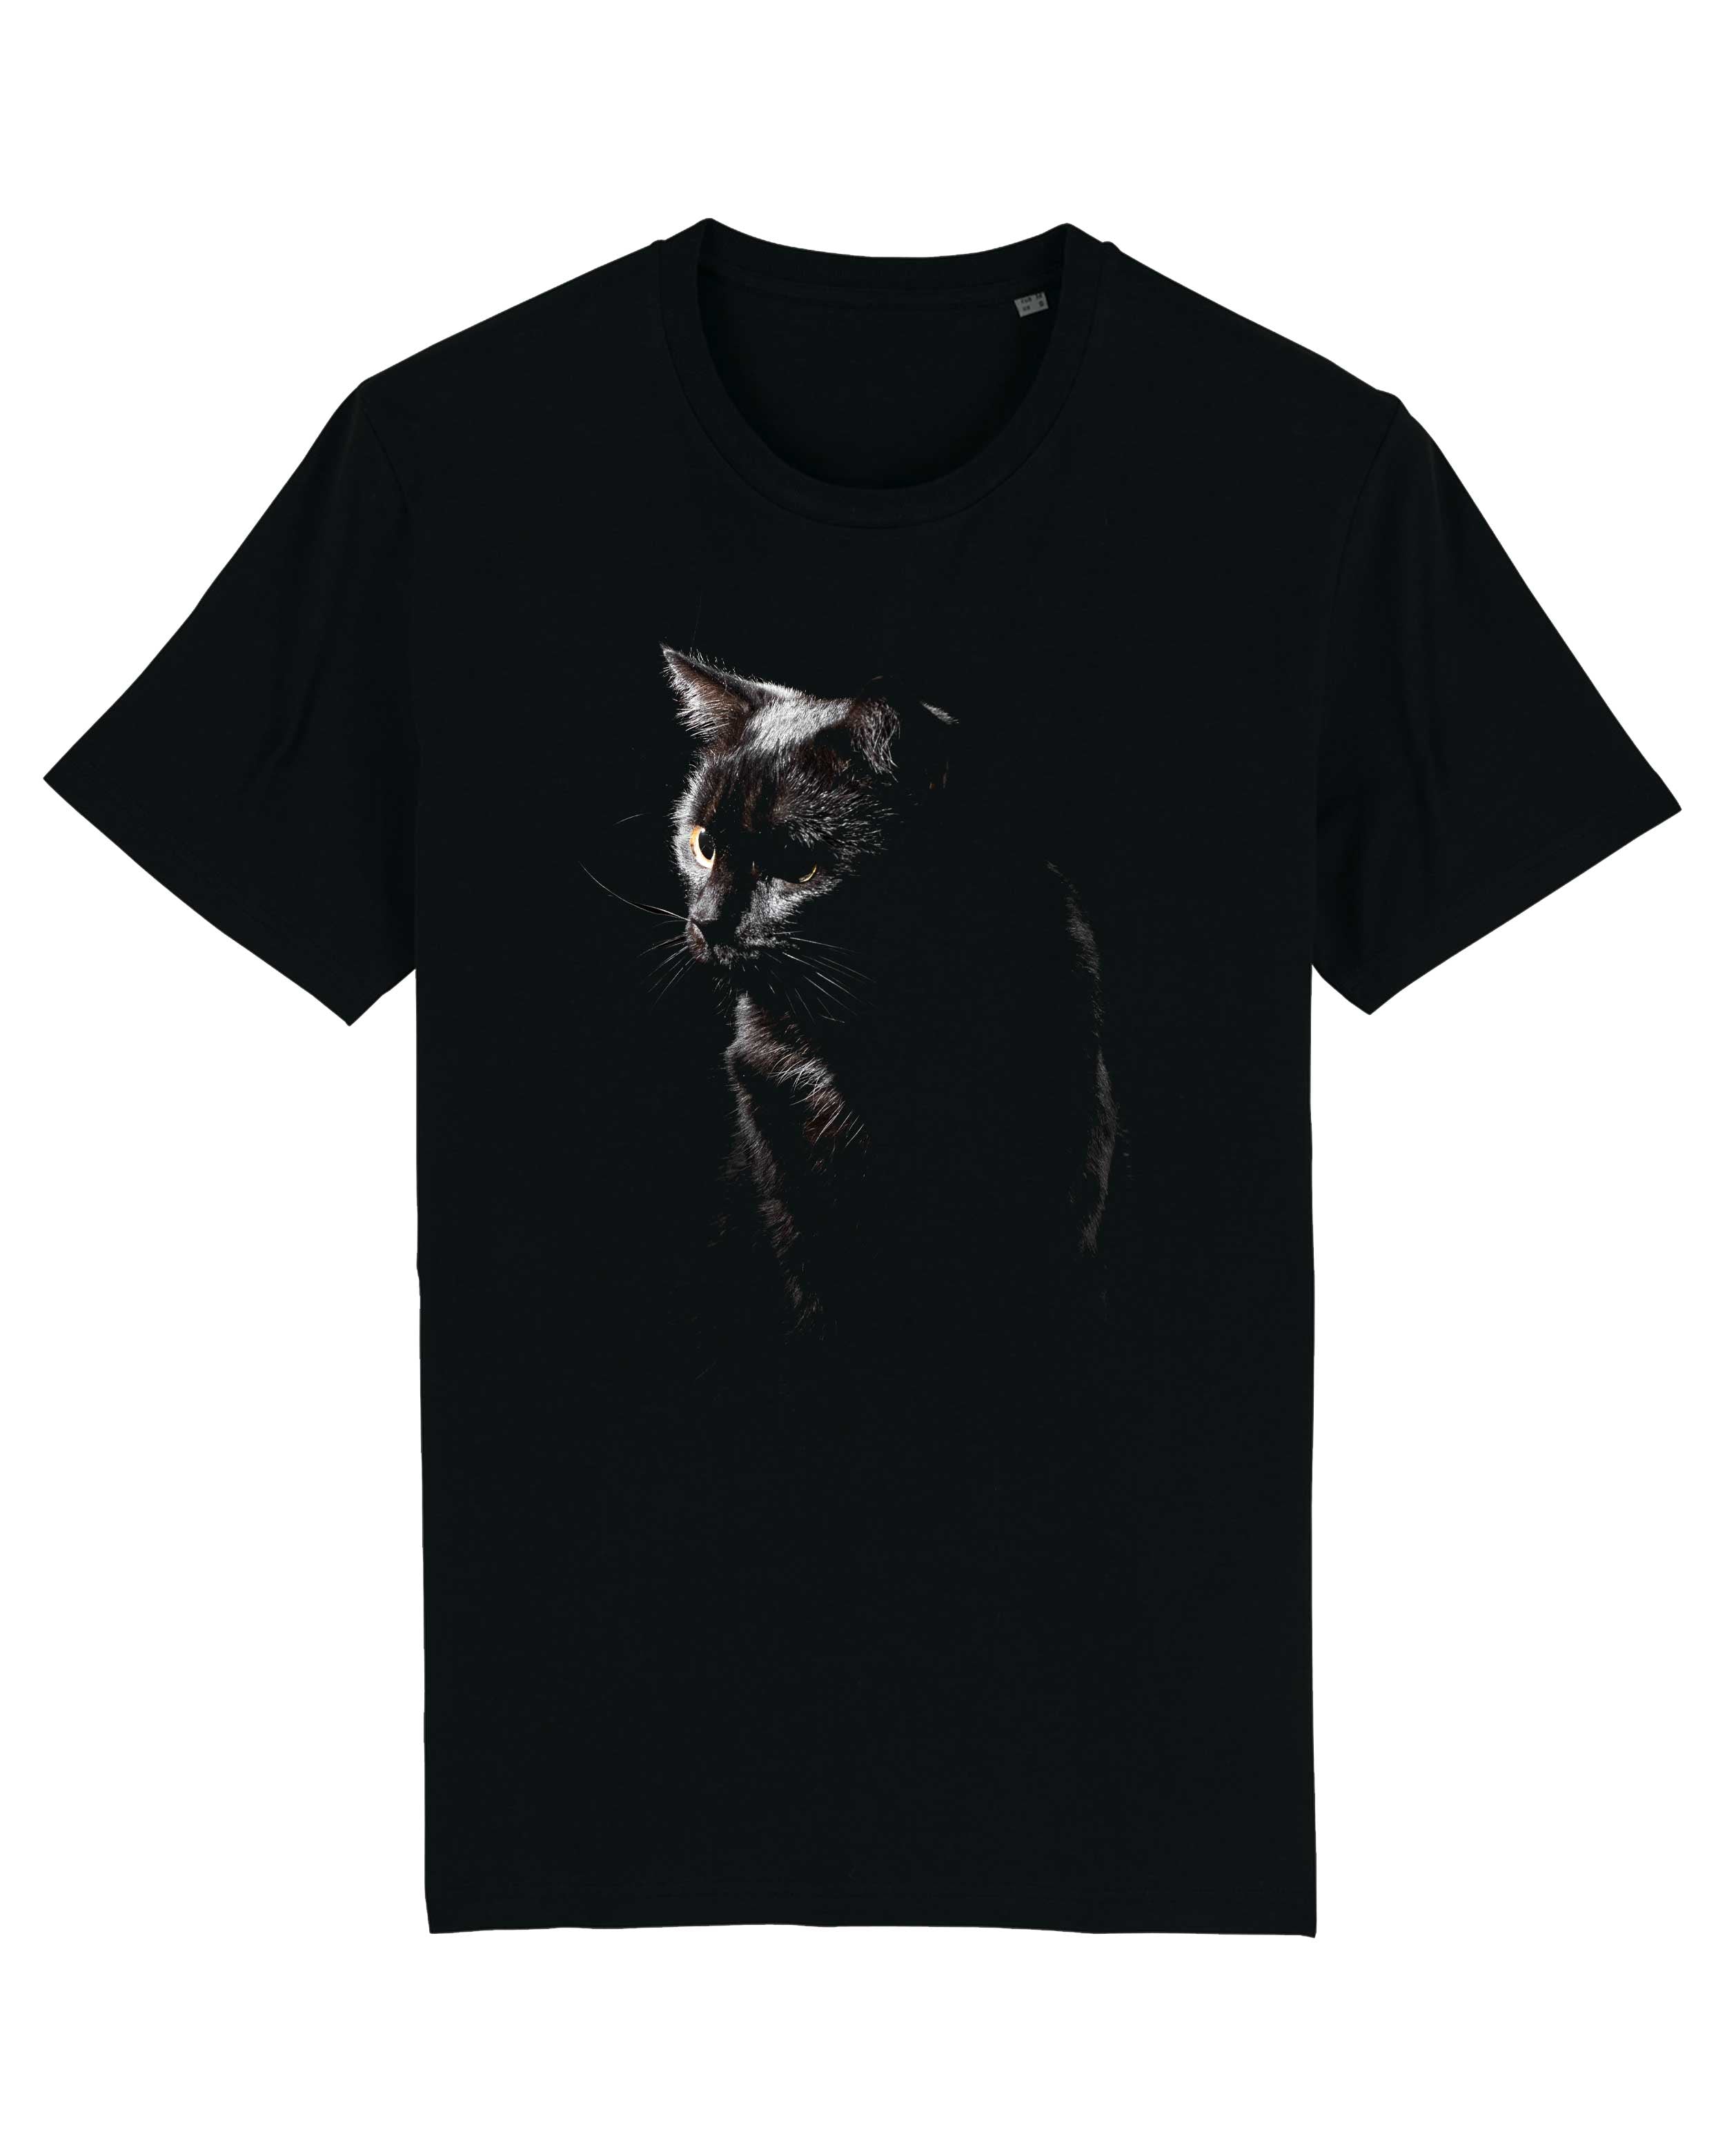 T-Shirt Schwarze Katze Tiere, Bio-Baumwolle, Unisex, Damen, Kids